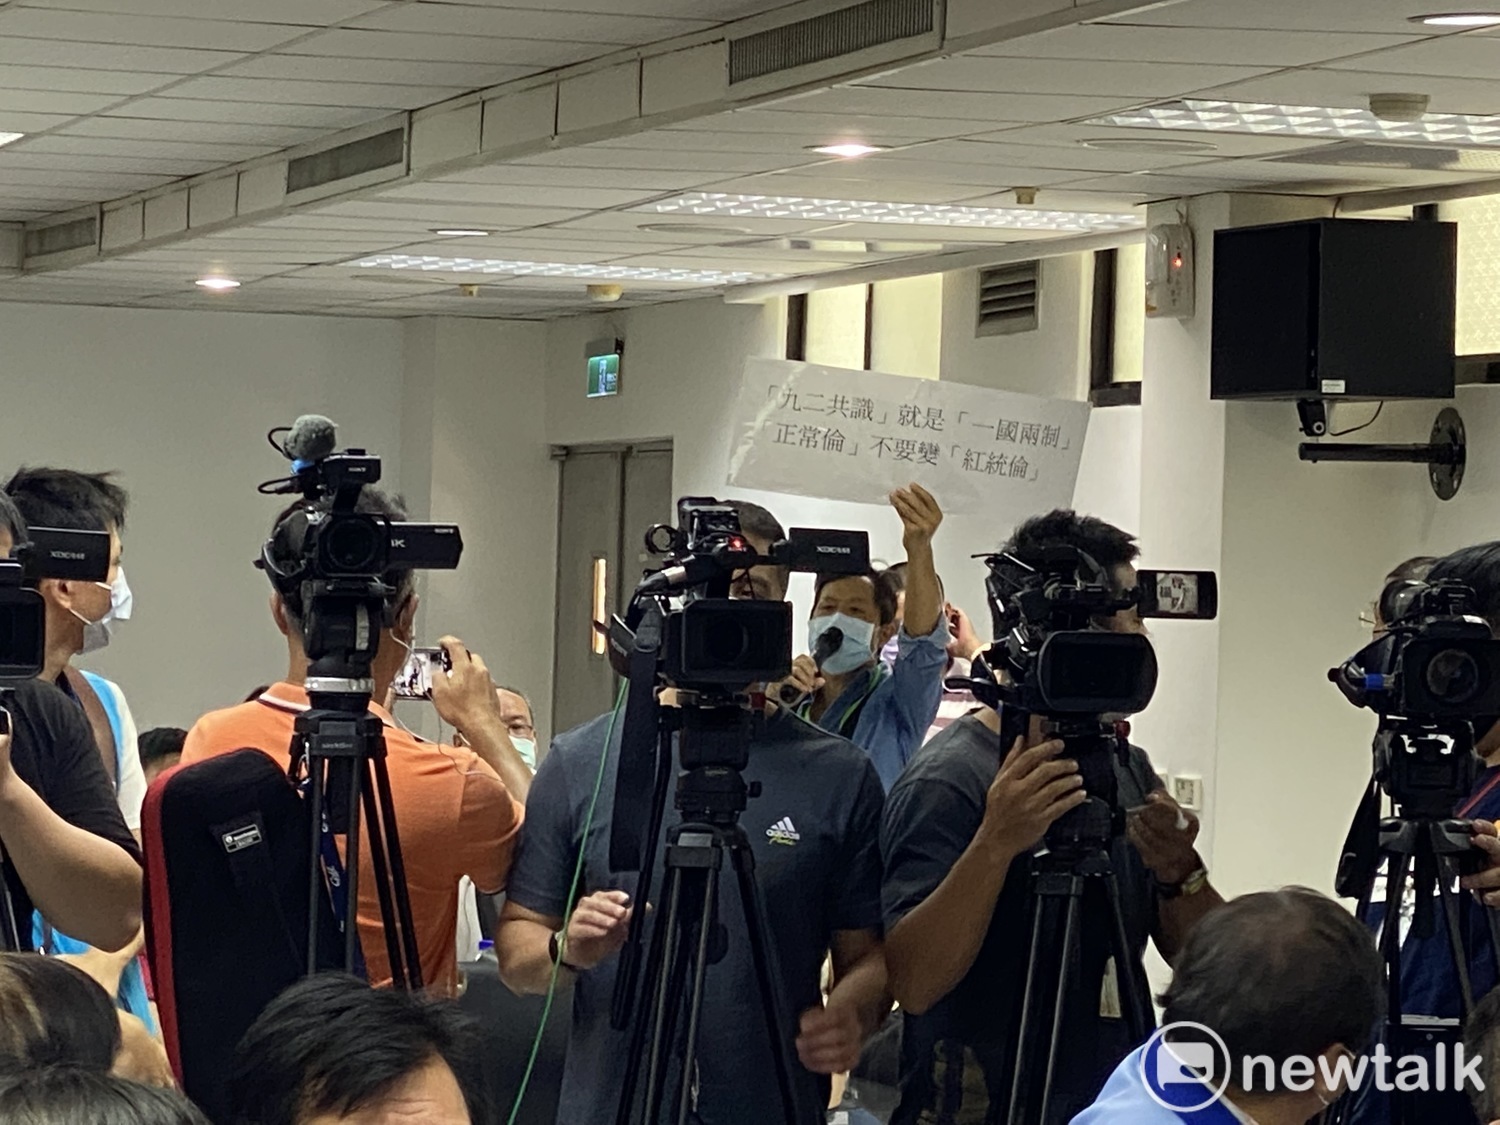 快訊》朱立倫赴新北議會謝票 台灣國突襲抗議嗆「九二共識就是一國兩制」 |